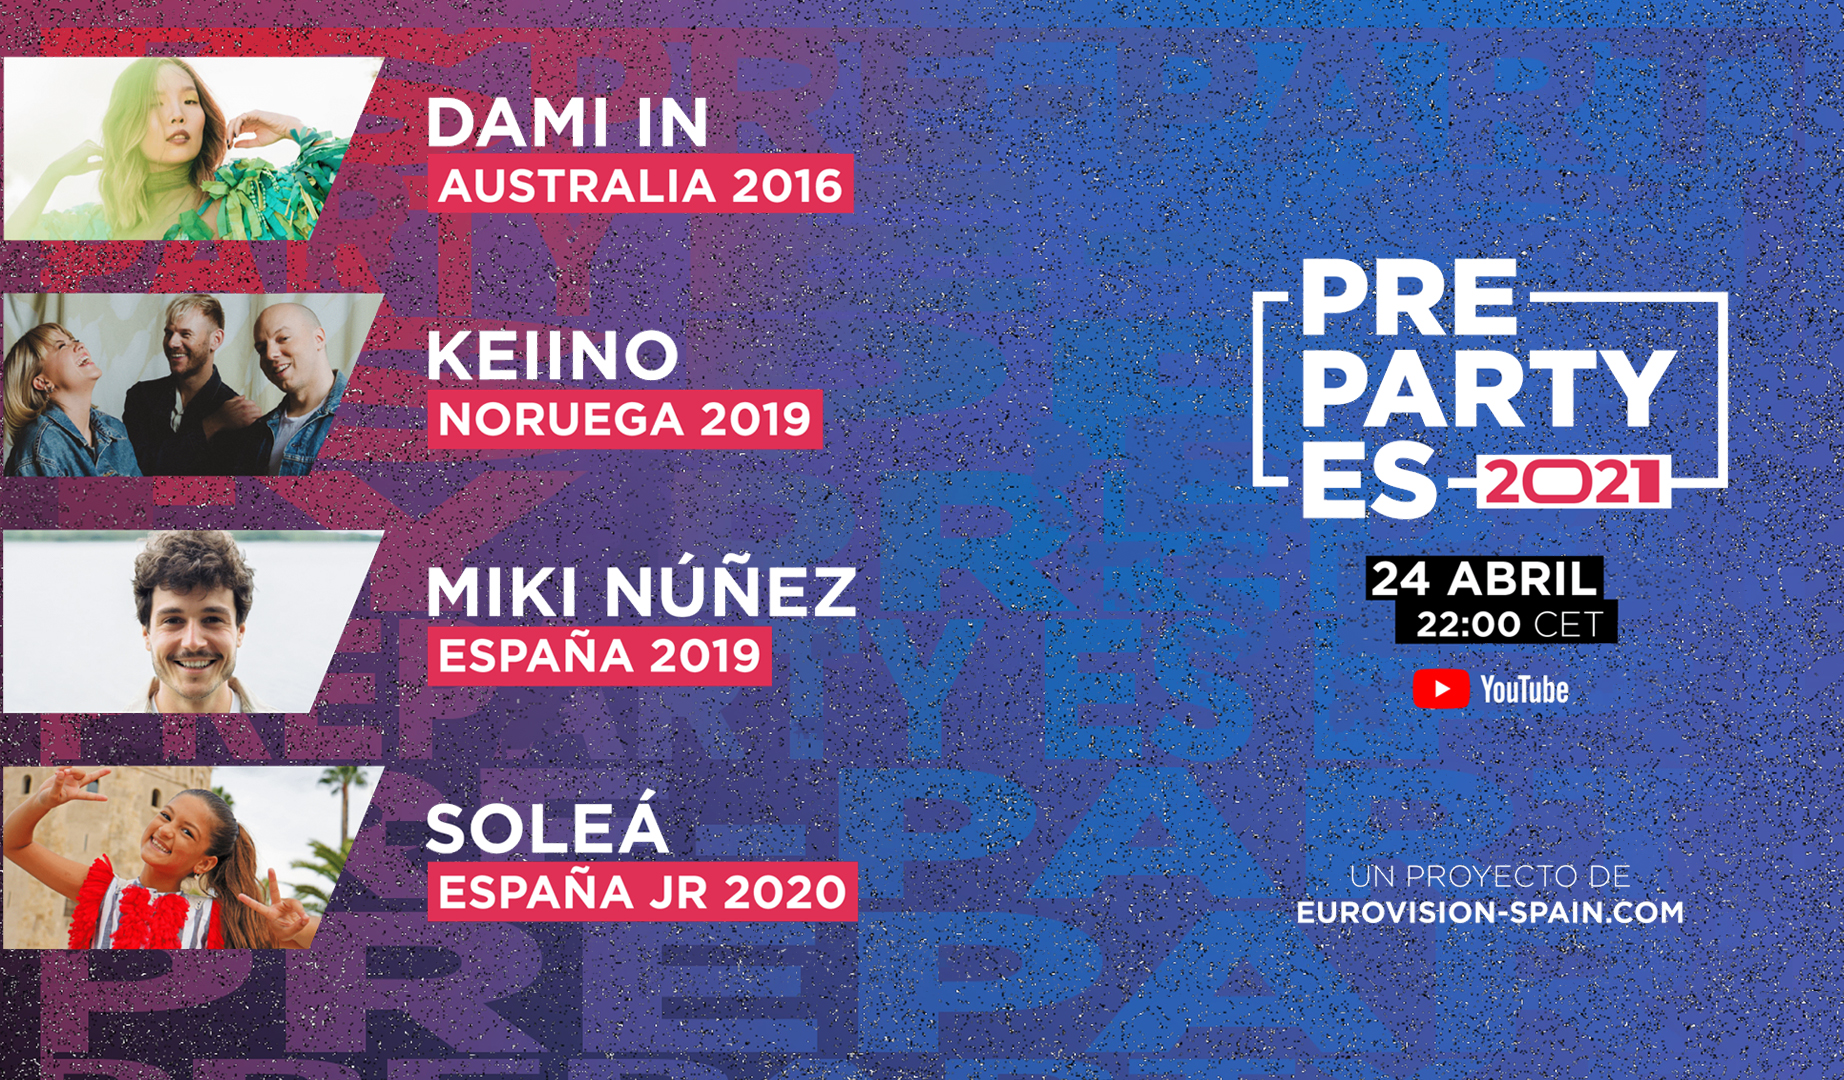 Dami Im, Keiino, Miki y Soleá completan el cartel de invitados especiales de la PrePartyES 2021